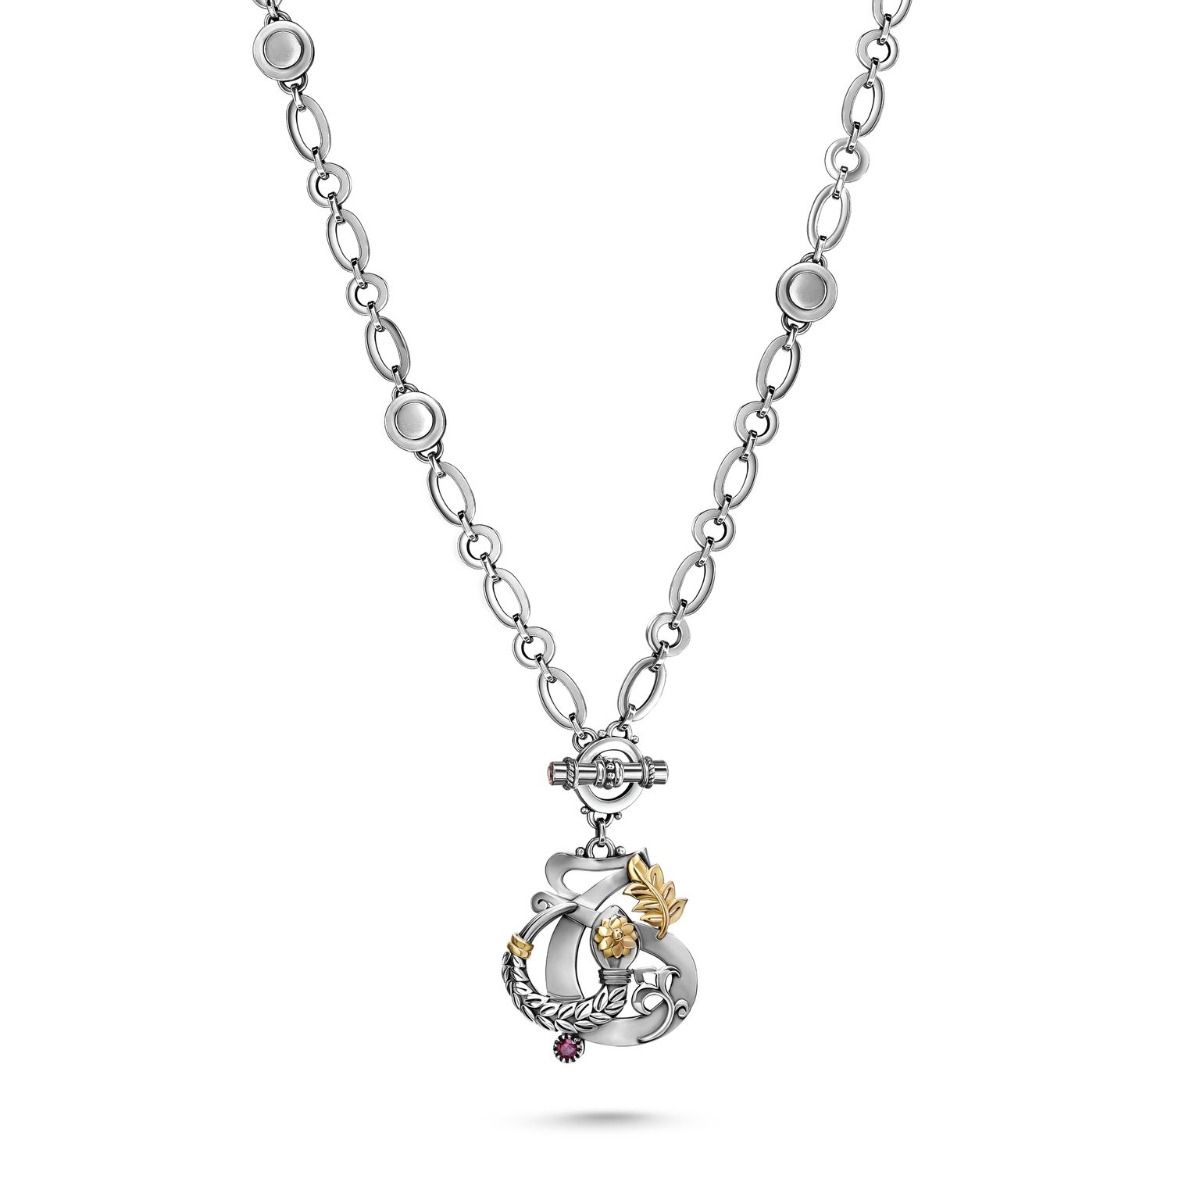 Love & Rebirth Multi-way Necklace by Azza Fahmy - Designer Necklaces